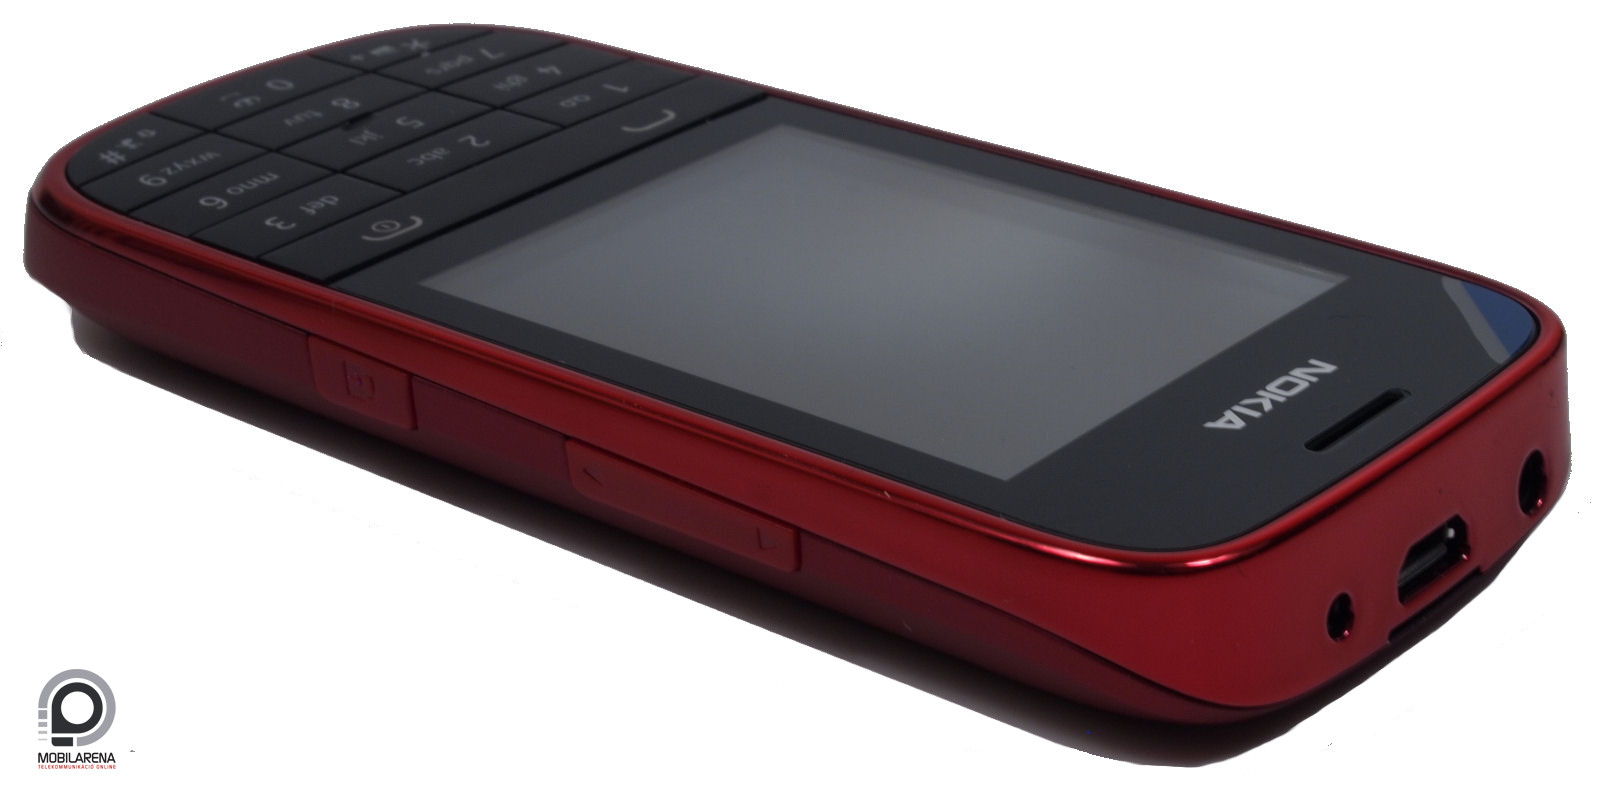 Nokia Asha 203 - vörös ötvözet - Mobilarena Mobiltelefon teszt -  Nyomtatóbarát verzió